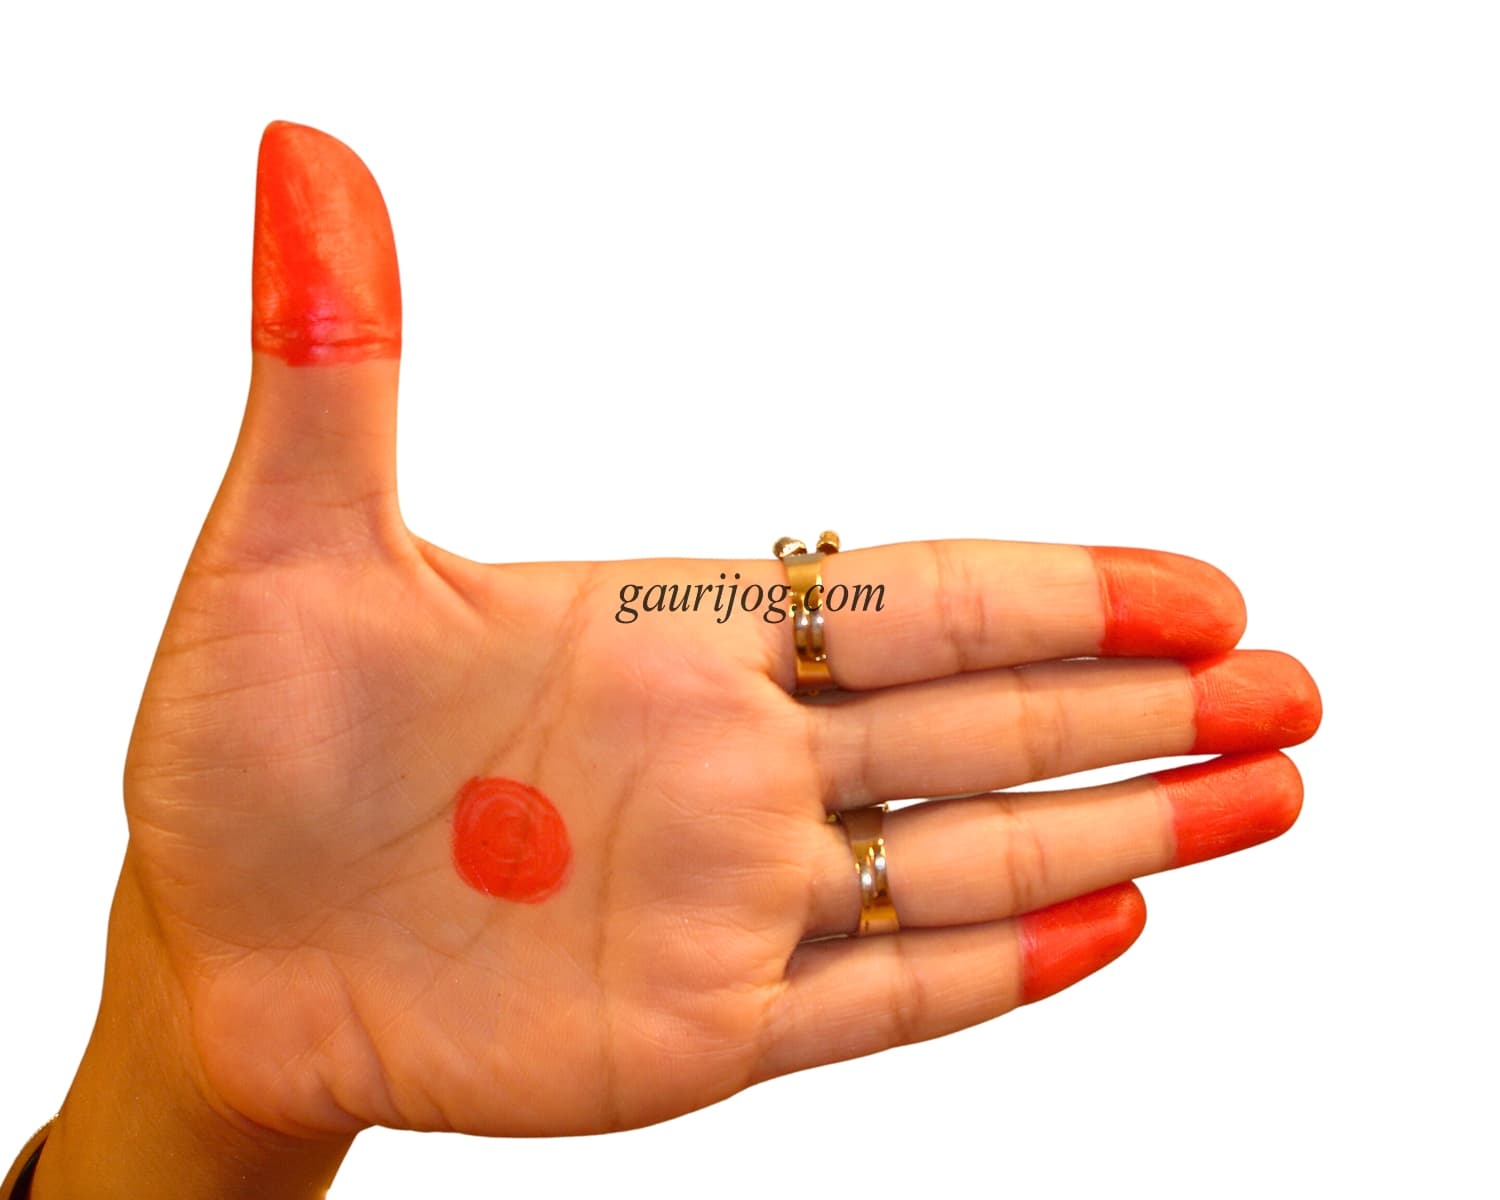 ArdhaChandra Hand Gesture by Gauri Jog